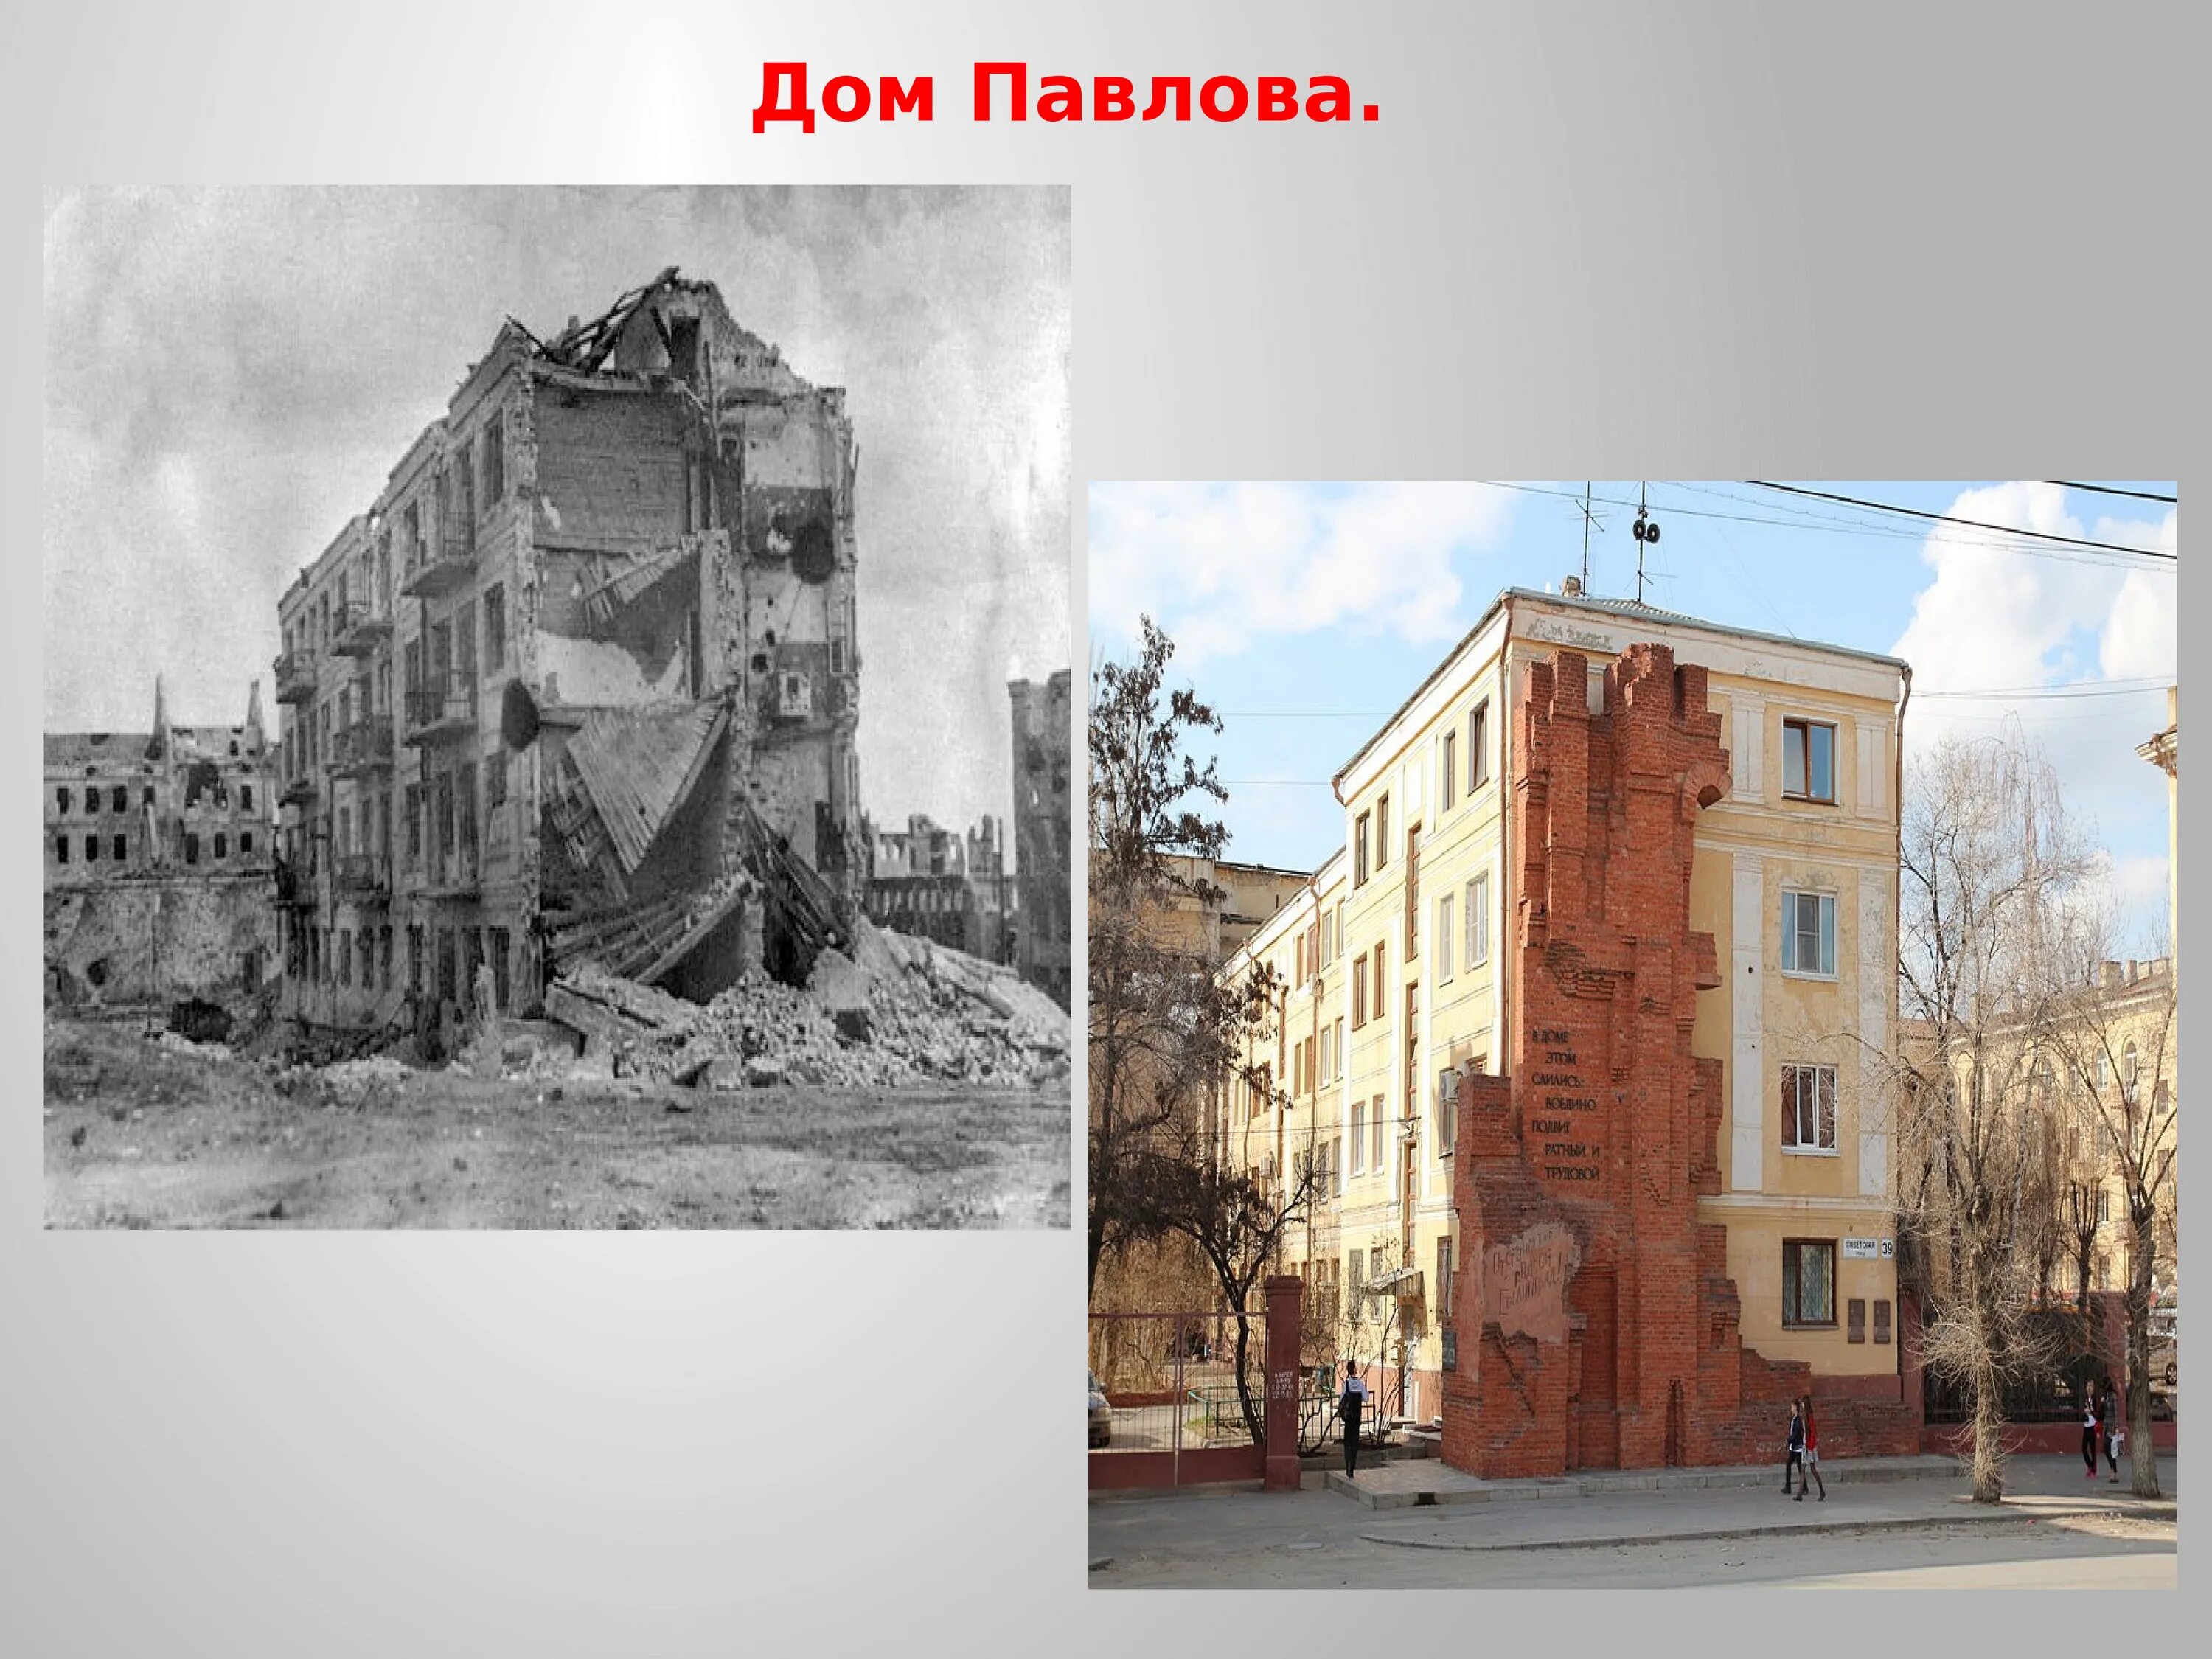 Незабываемый сталинград дом павлова